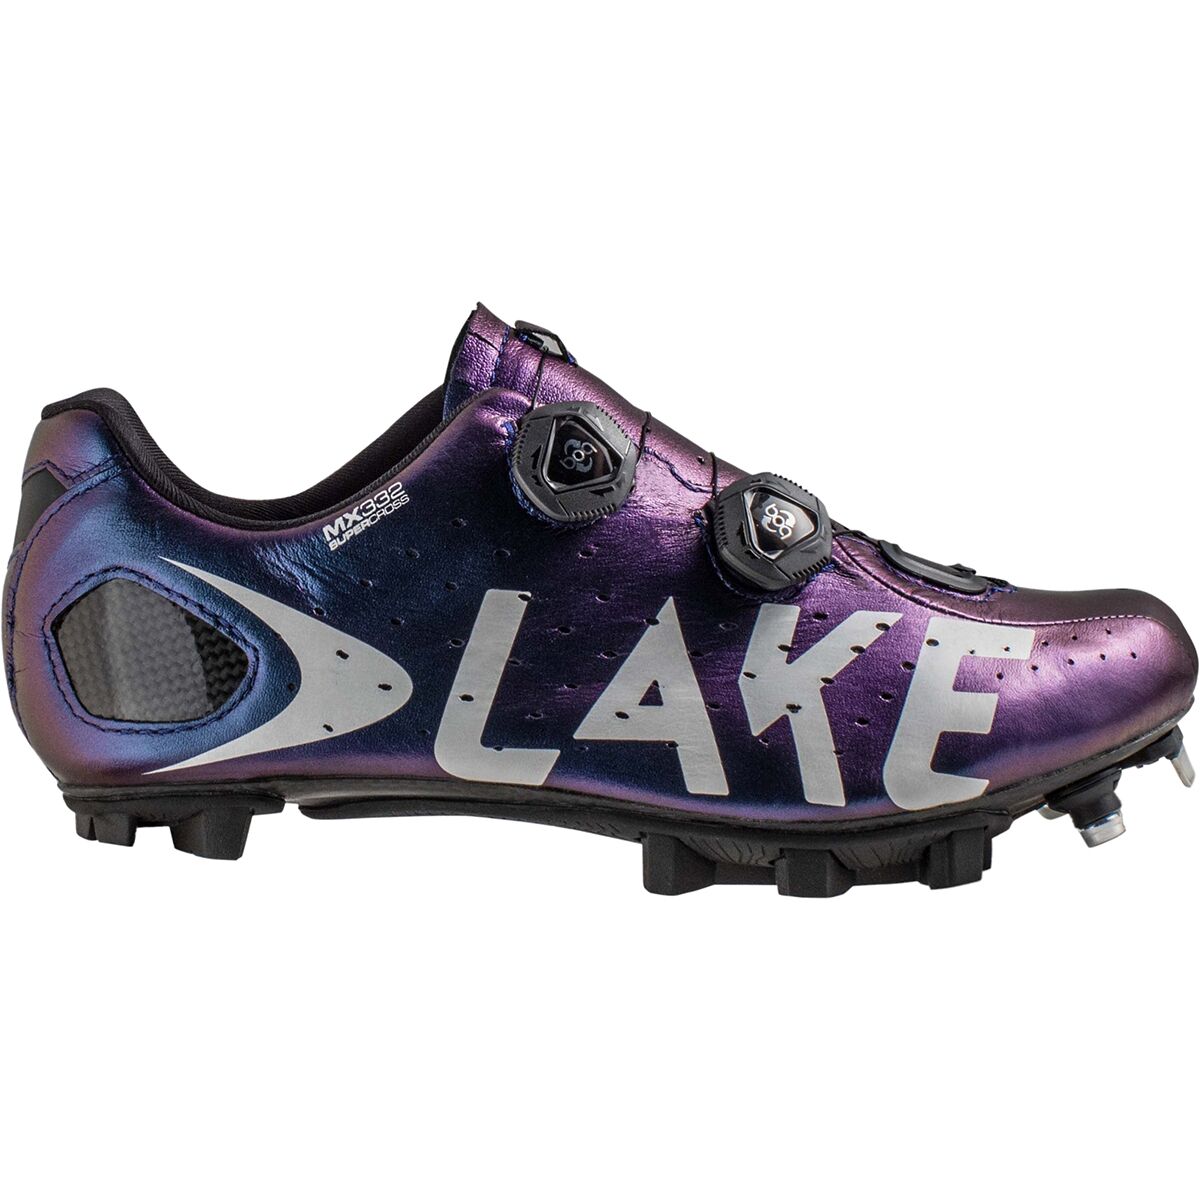 Lake MX332 SuperCross Extra Wide Cycling Shoe - Women's